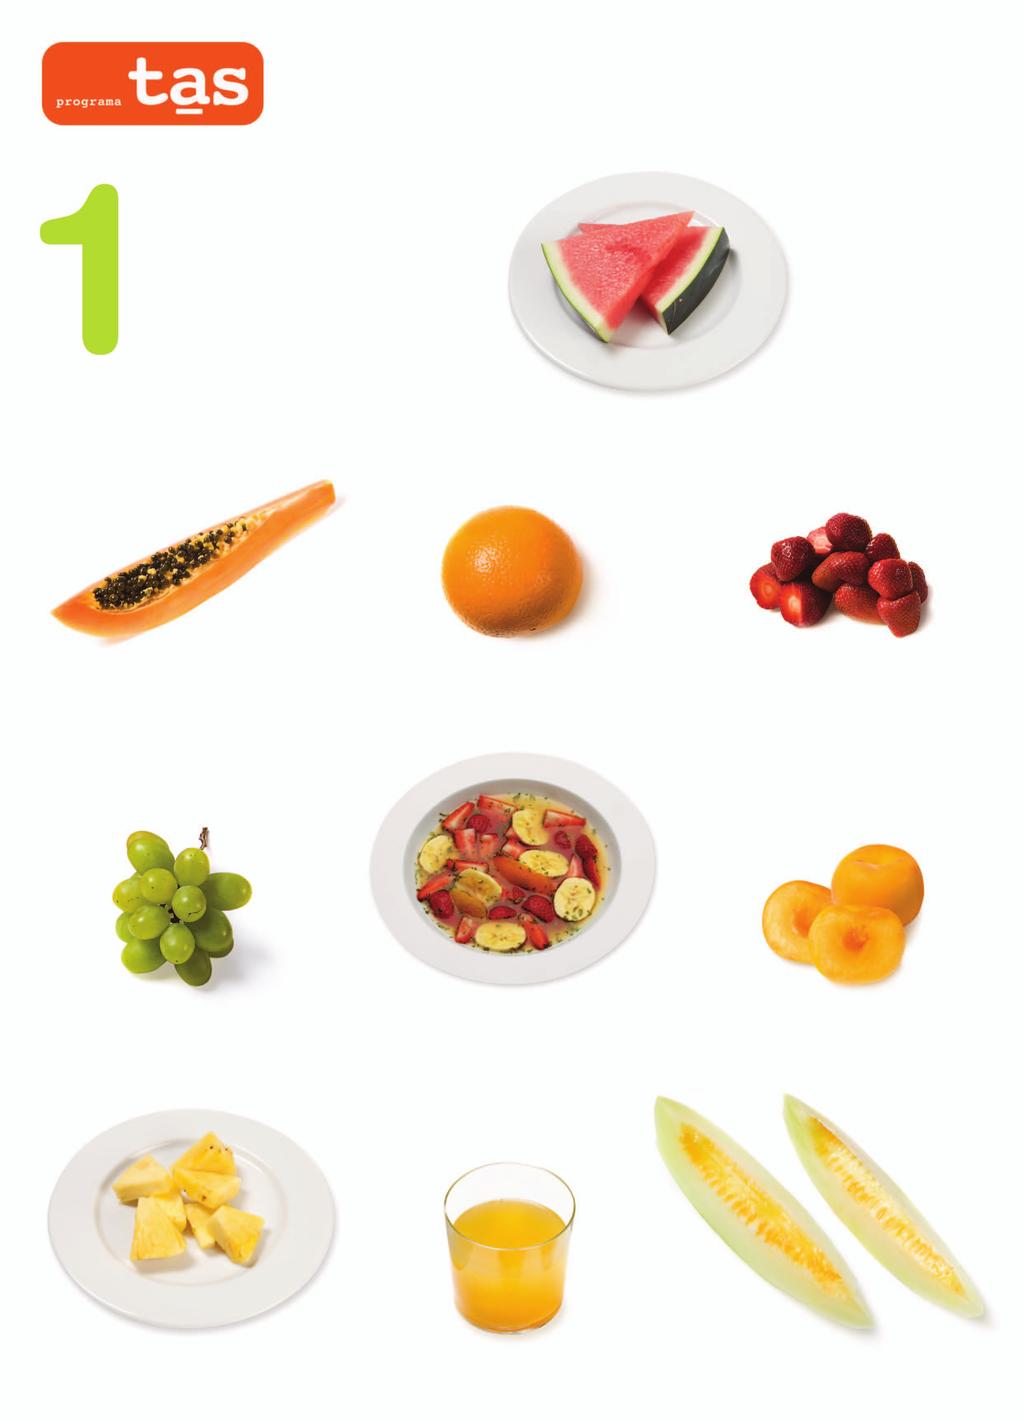 FRUTAS Para ayudarte a contar, considera una ración de fruta cualquiera de los siguientes ejemplos: 1 corte de sandía 1 corte de papaya 1